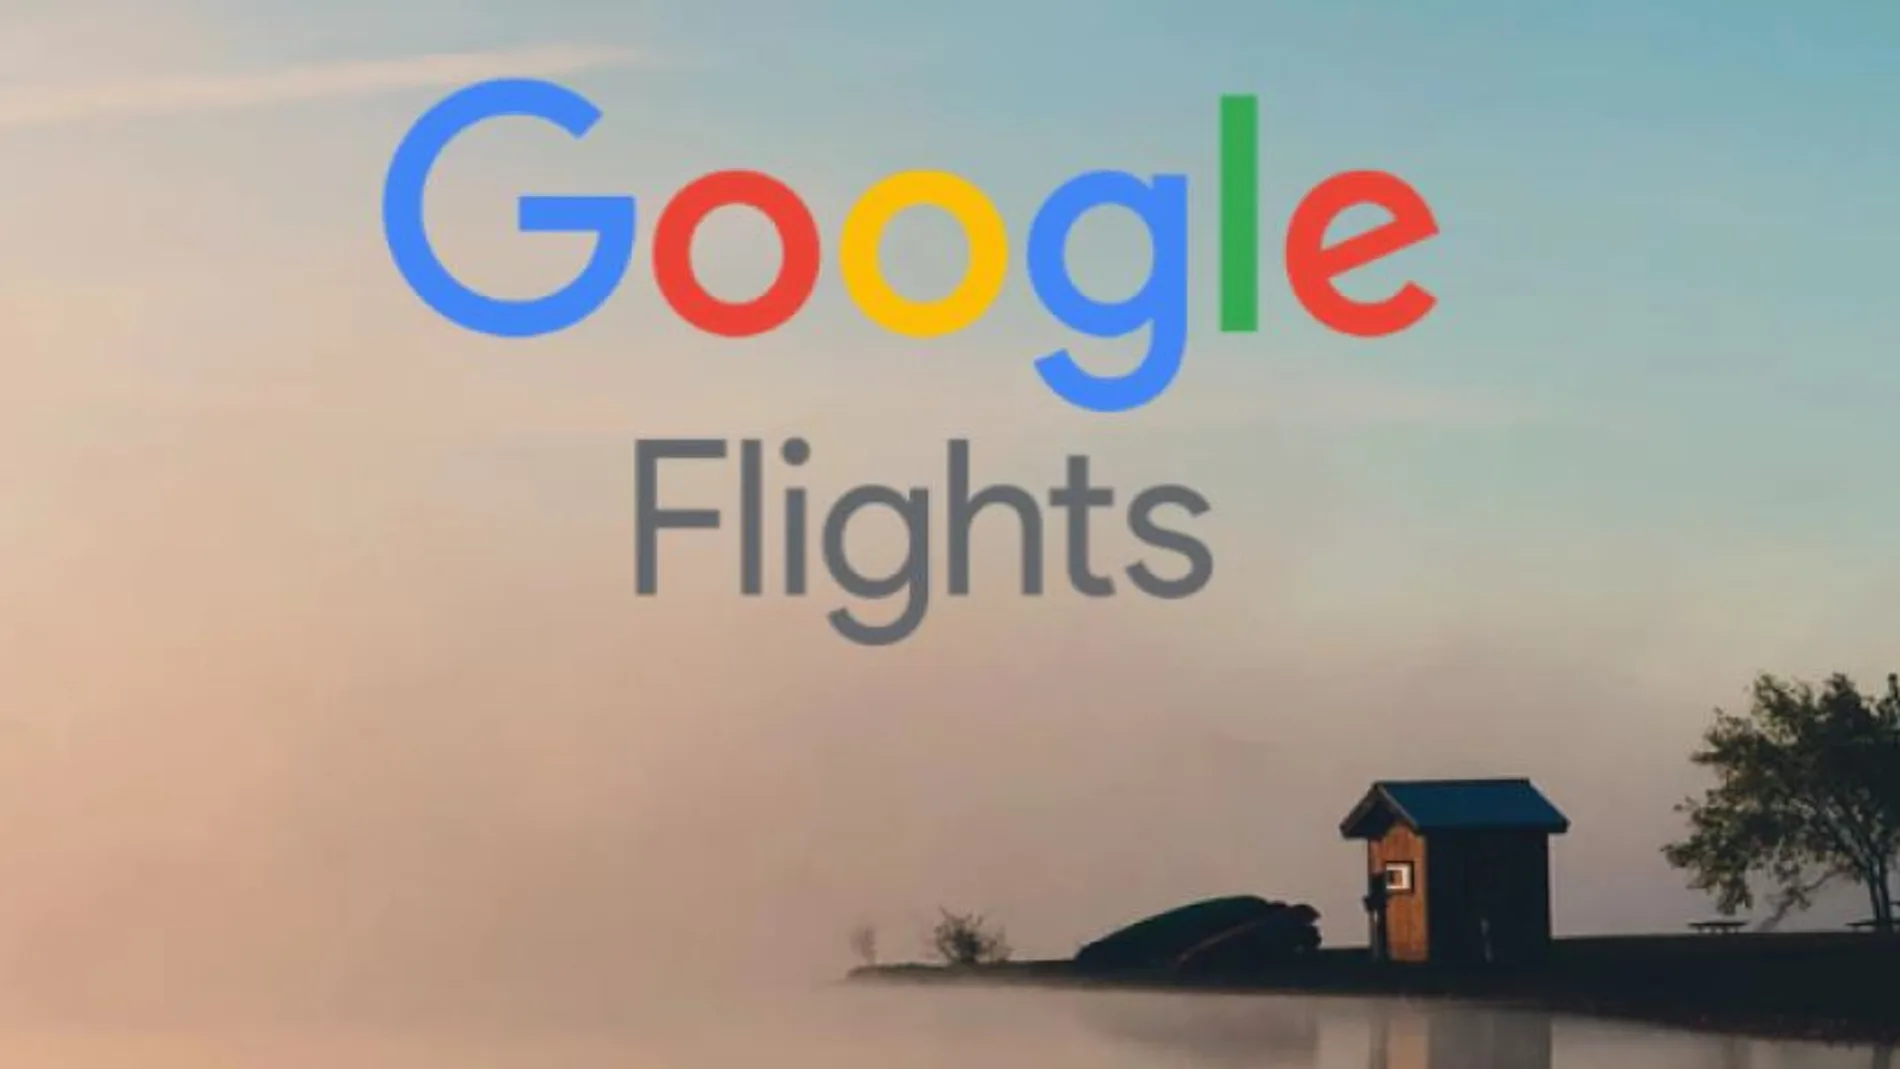 Vuelos baratos con Google Flights